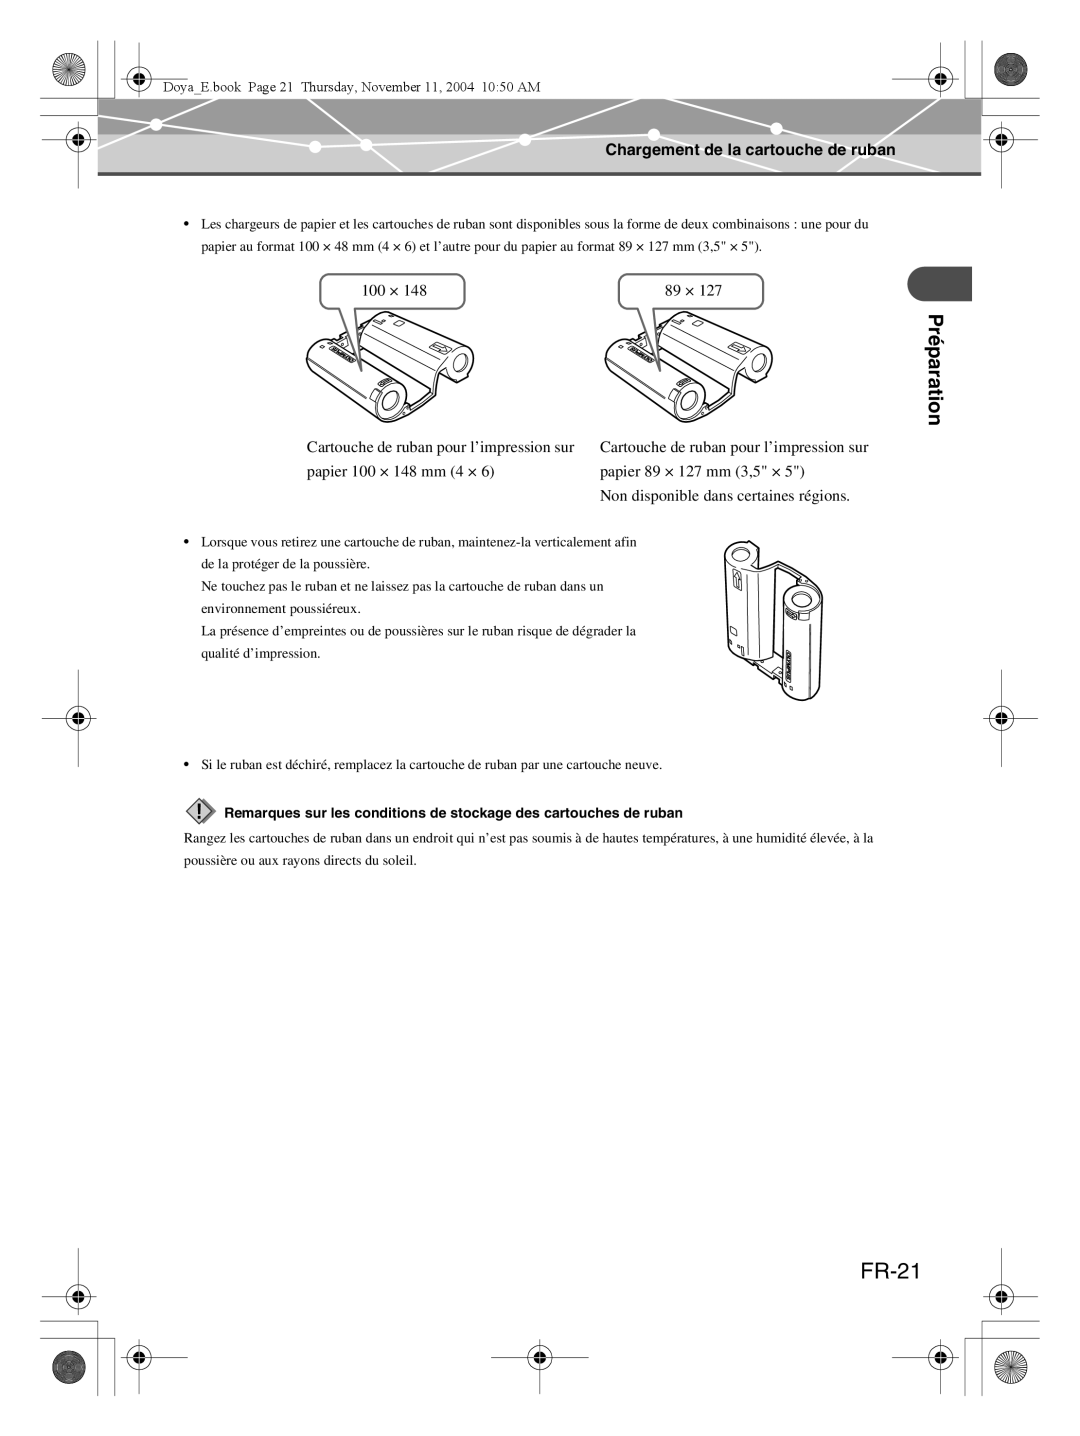 Olympus P-S100 user manual FR-21, Préparation, Chargement de la cartouche de ruban, 100 × 